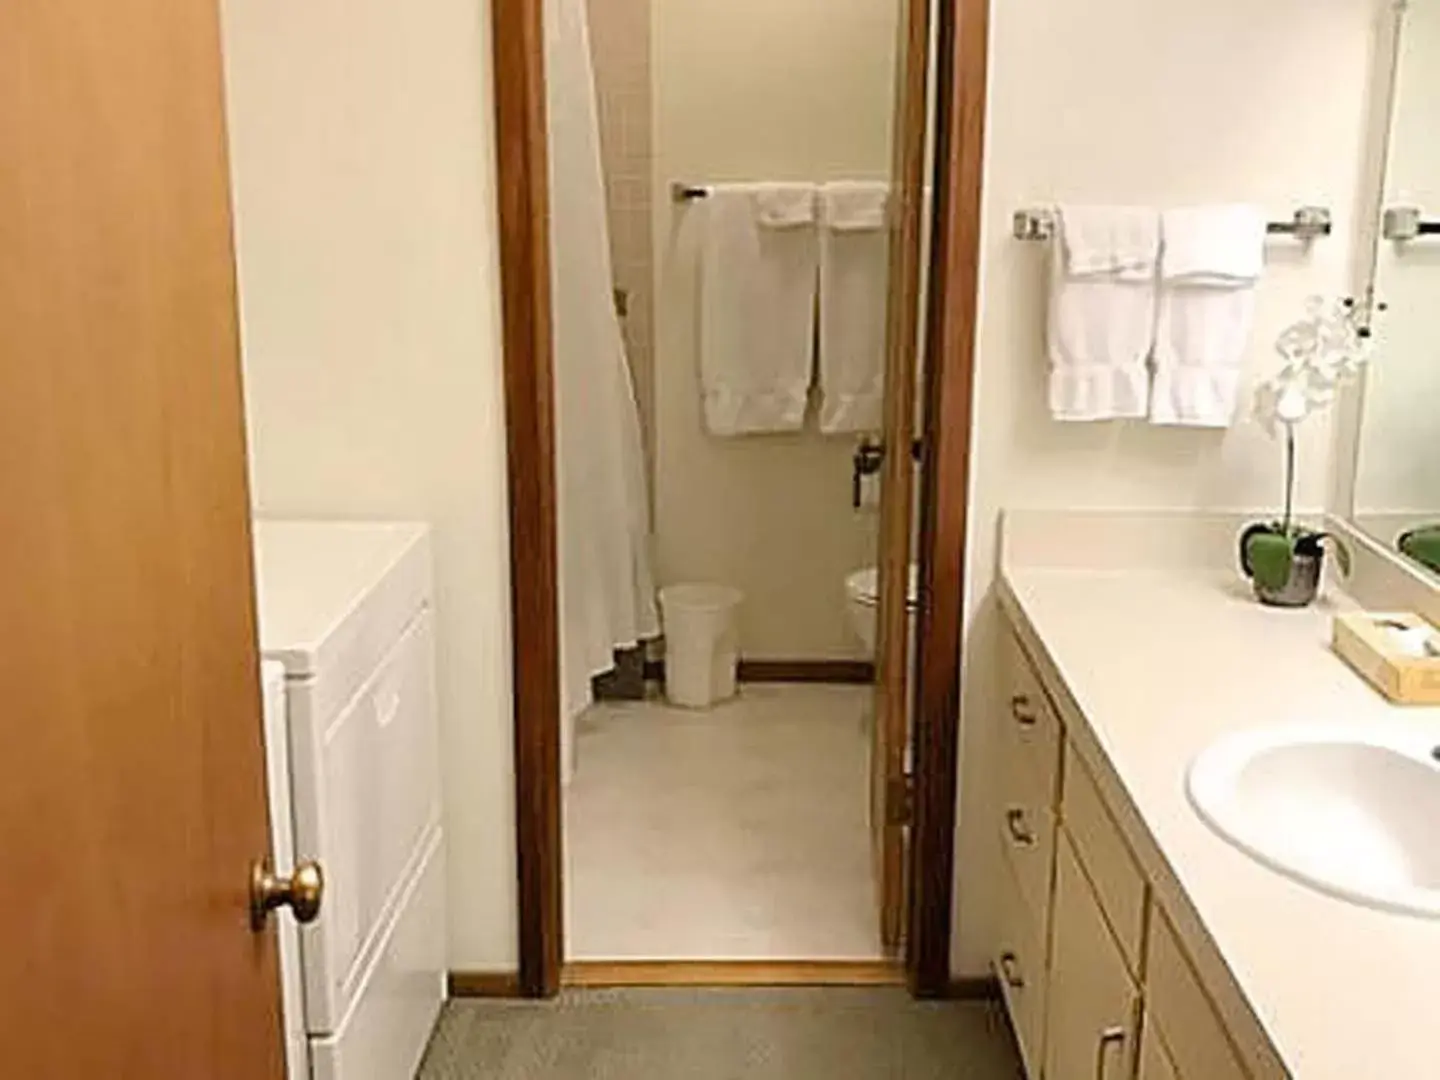 Bathroom in Jackson Hole Vacation Condominiums, a VRI resort